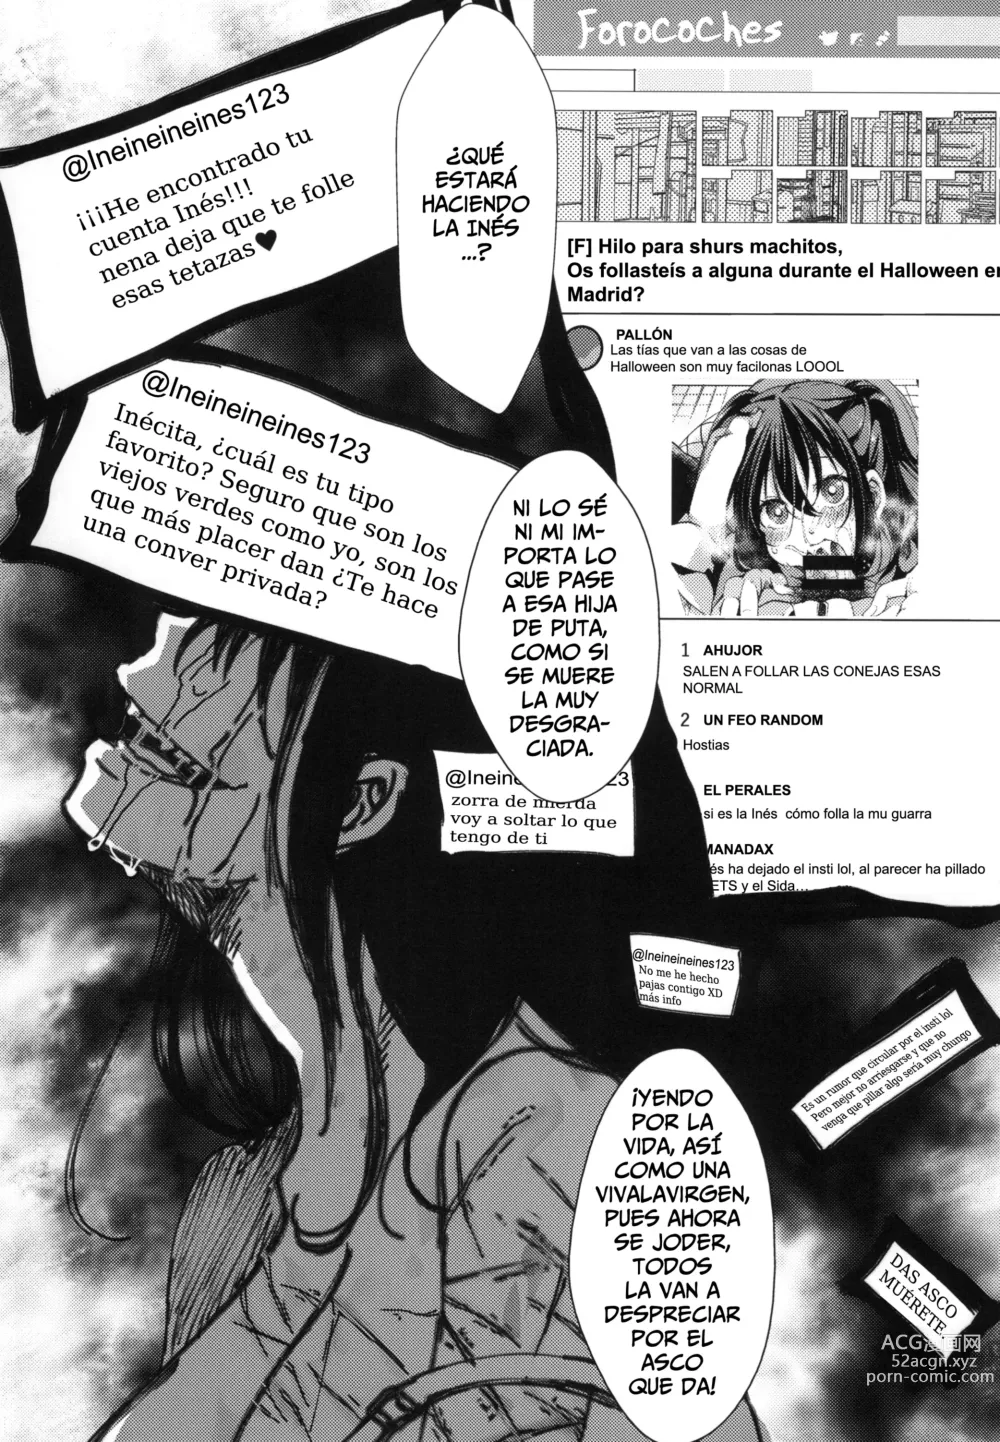 Page 27 of doujinshi 31 de Octubre, Halloween, El Día que eché a perder mi vida